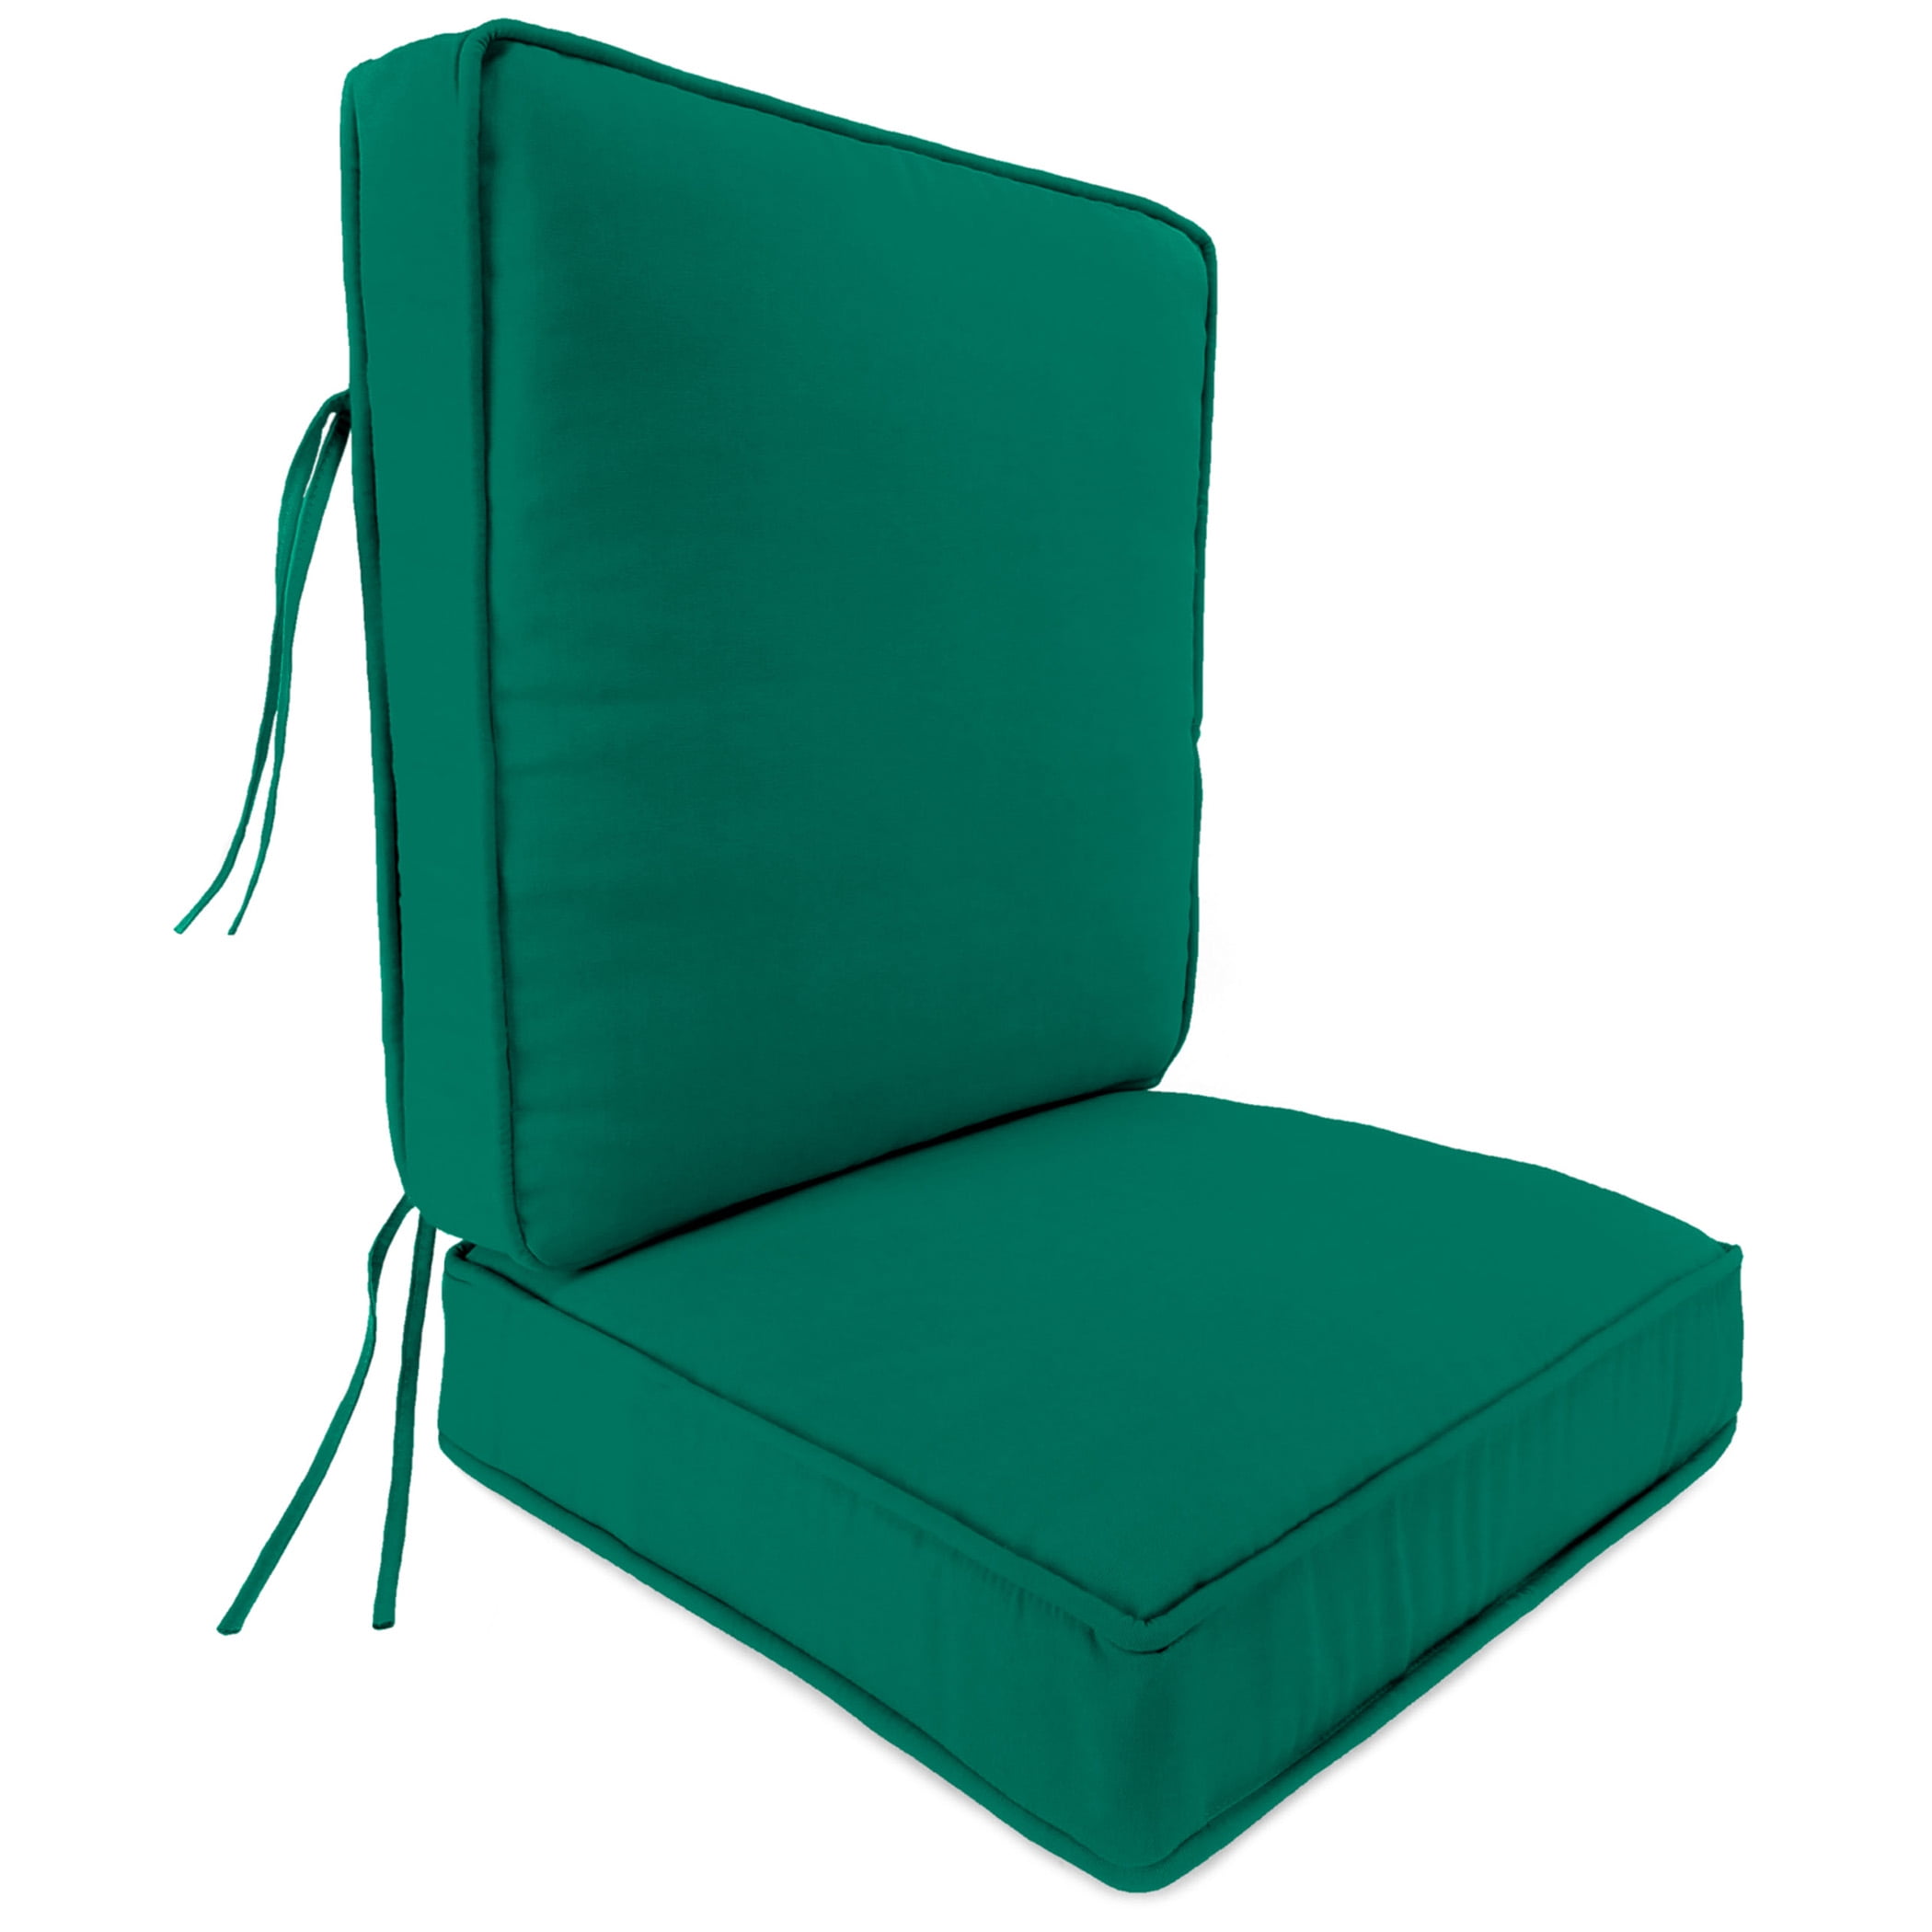 All Things Cedar Tc19-2-b Chair Cushion Blue